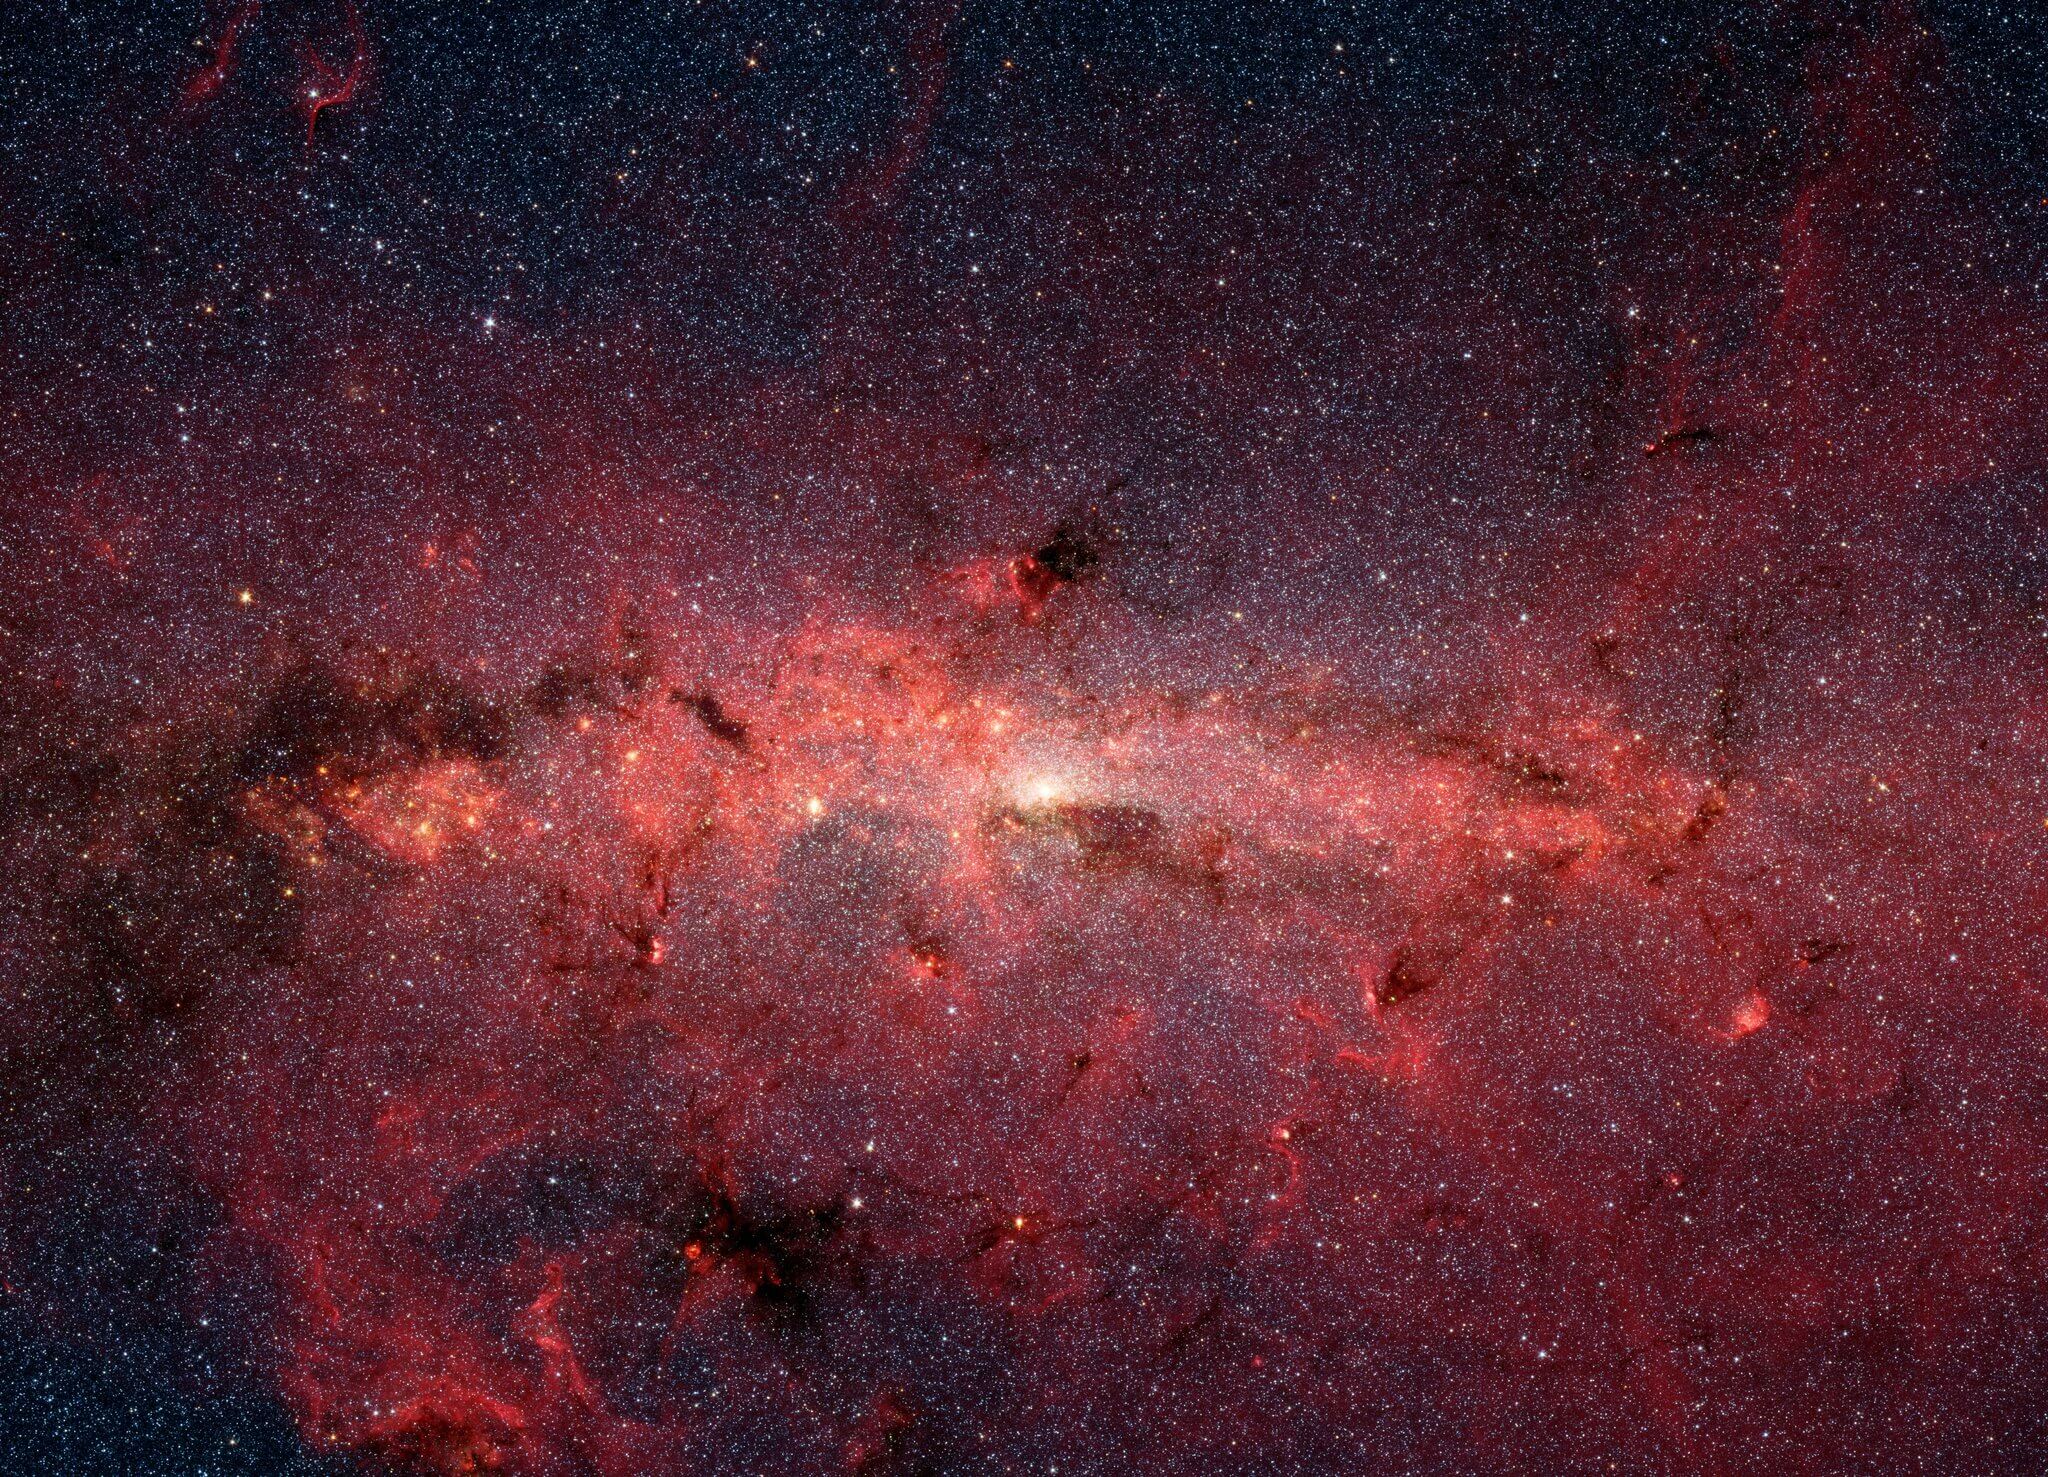 أبعد مجرة درب التبانة اكتشاف المجرة الجدار